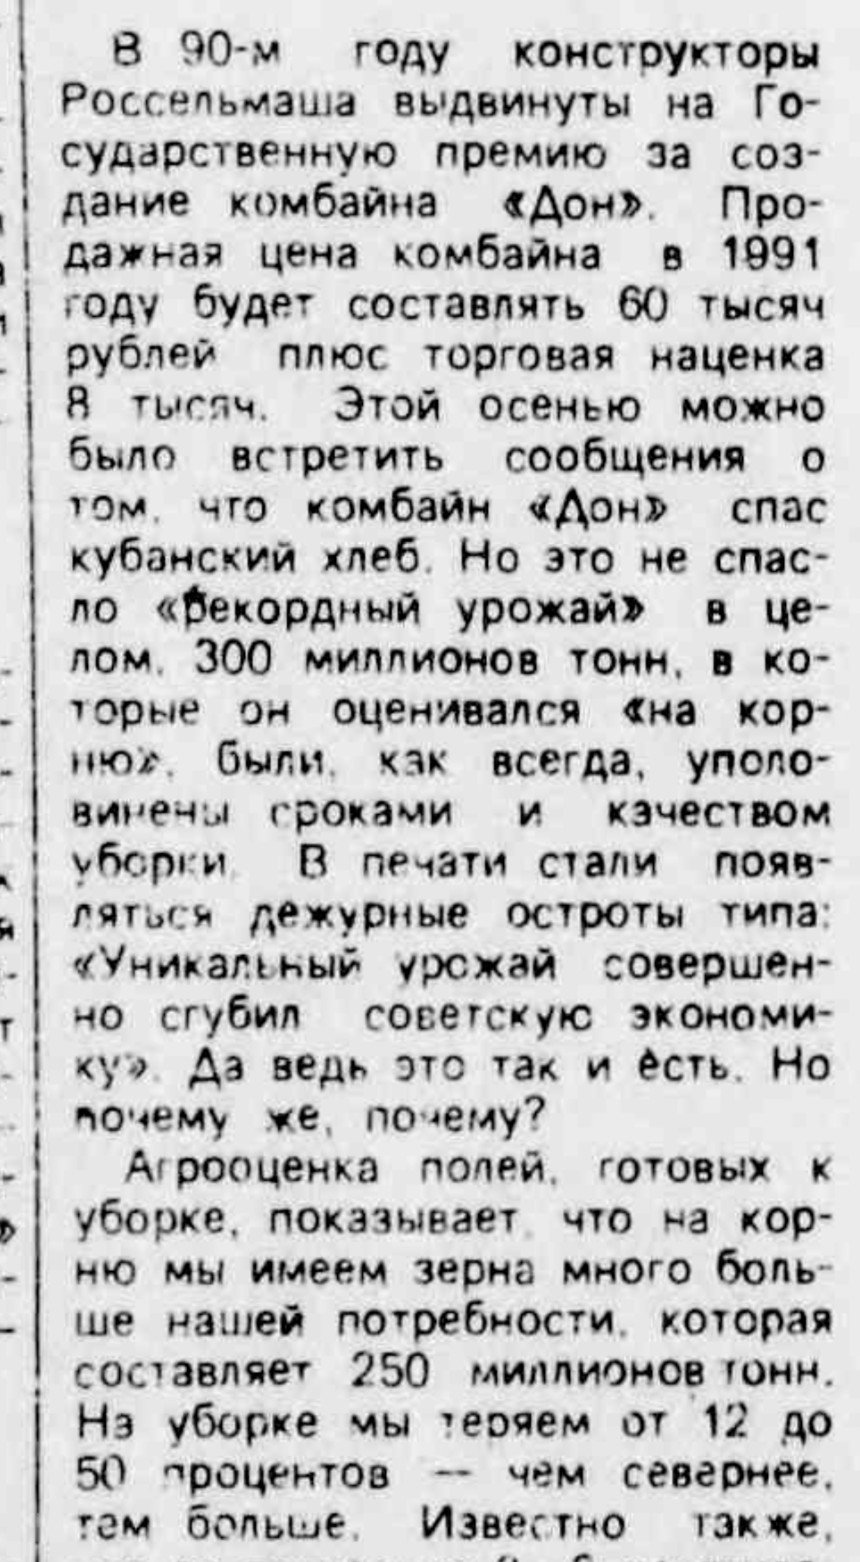 “Российская Газета, 1991 год”